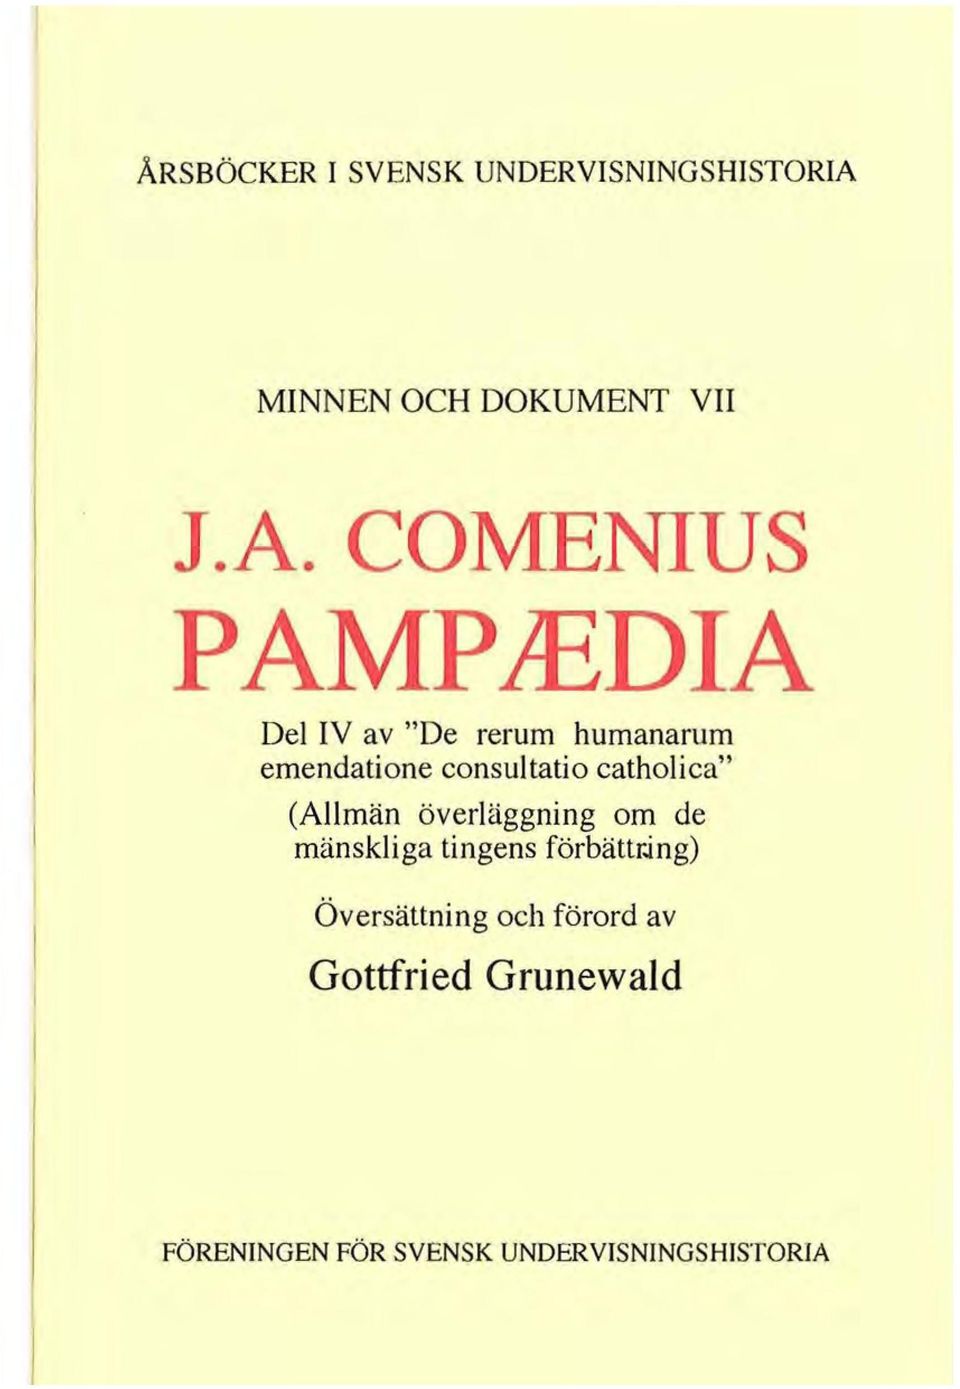 COMENIUS P AMPlEDIA Del IV av "De rerum humanarum emendatione consuttatio